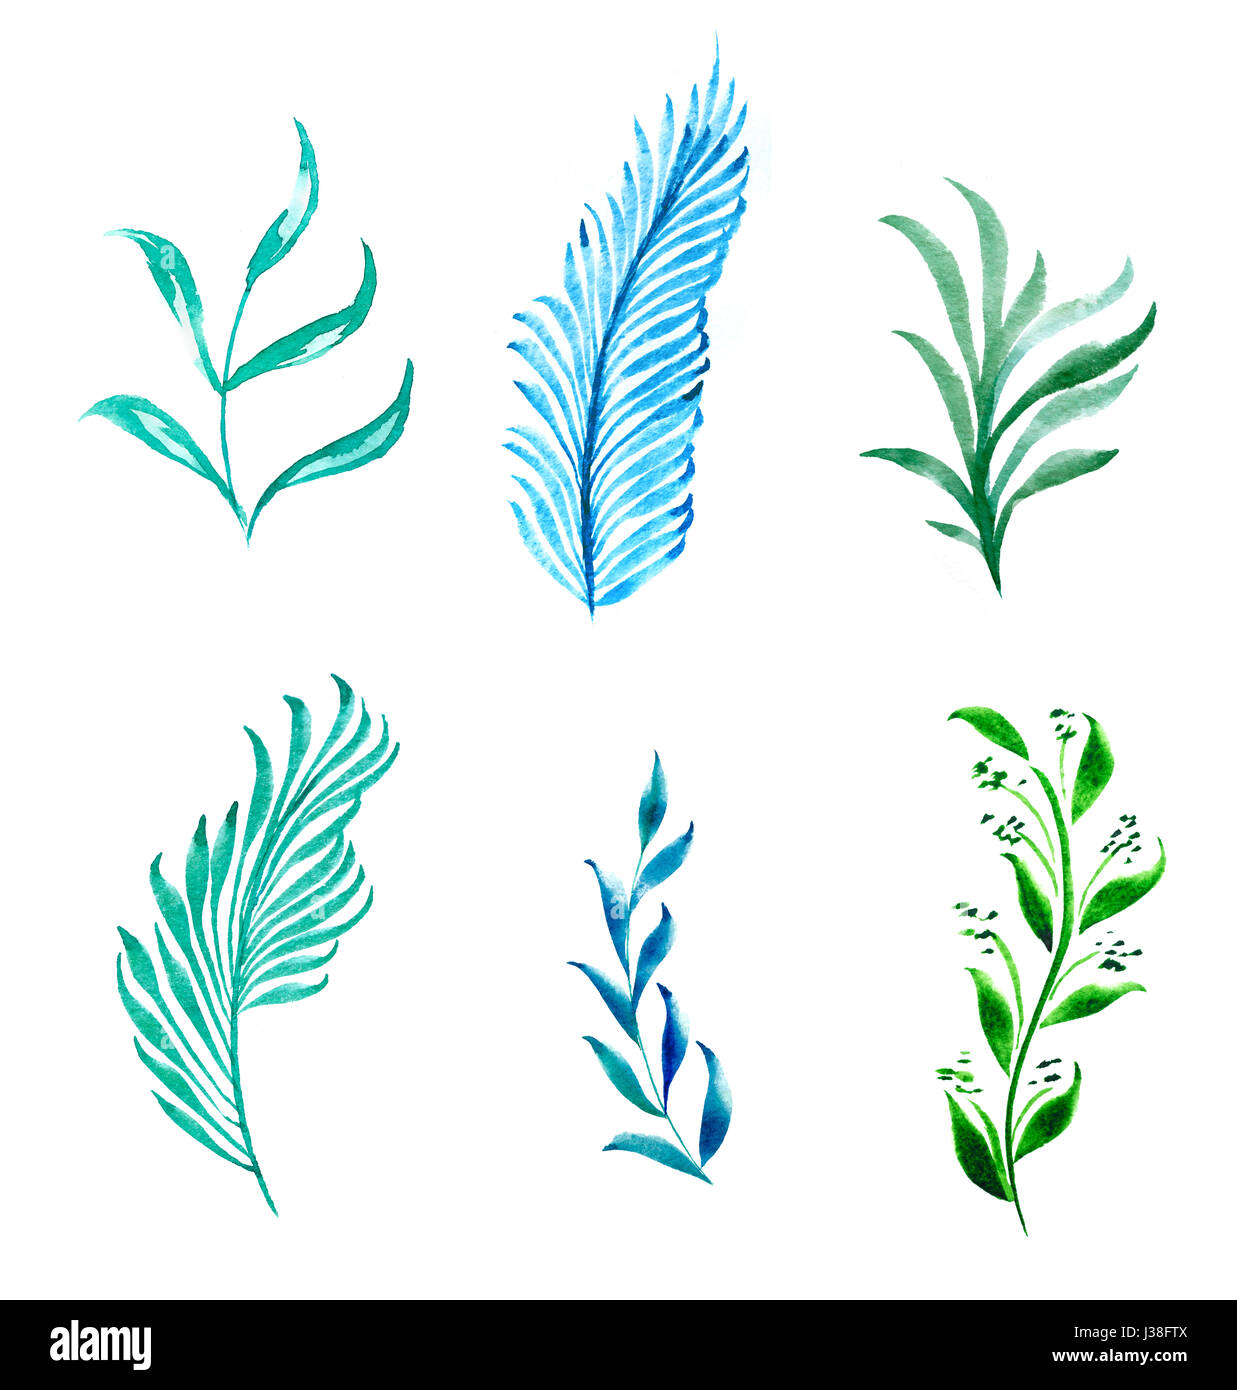 Zeichnung der Blätter einer Pflanze auf einem weißen Hintergrund mit Wasserfarben bemalt Stockfoto